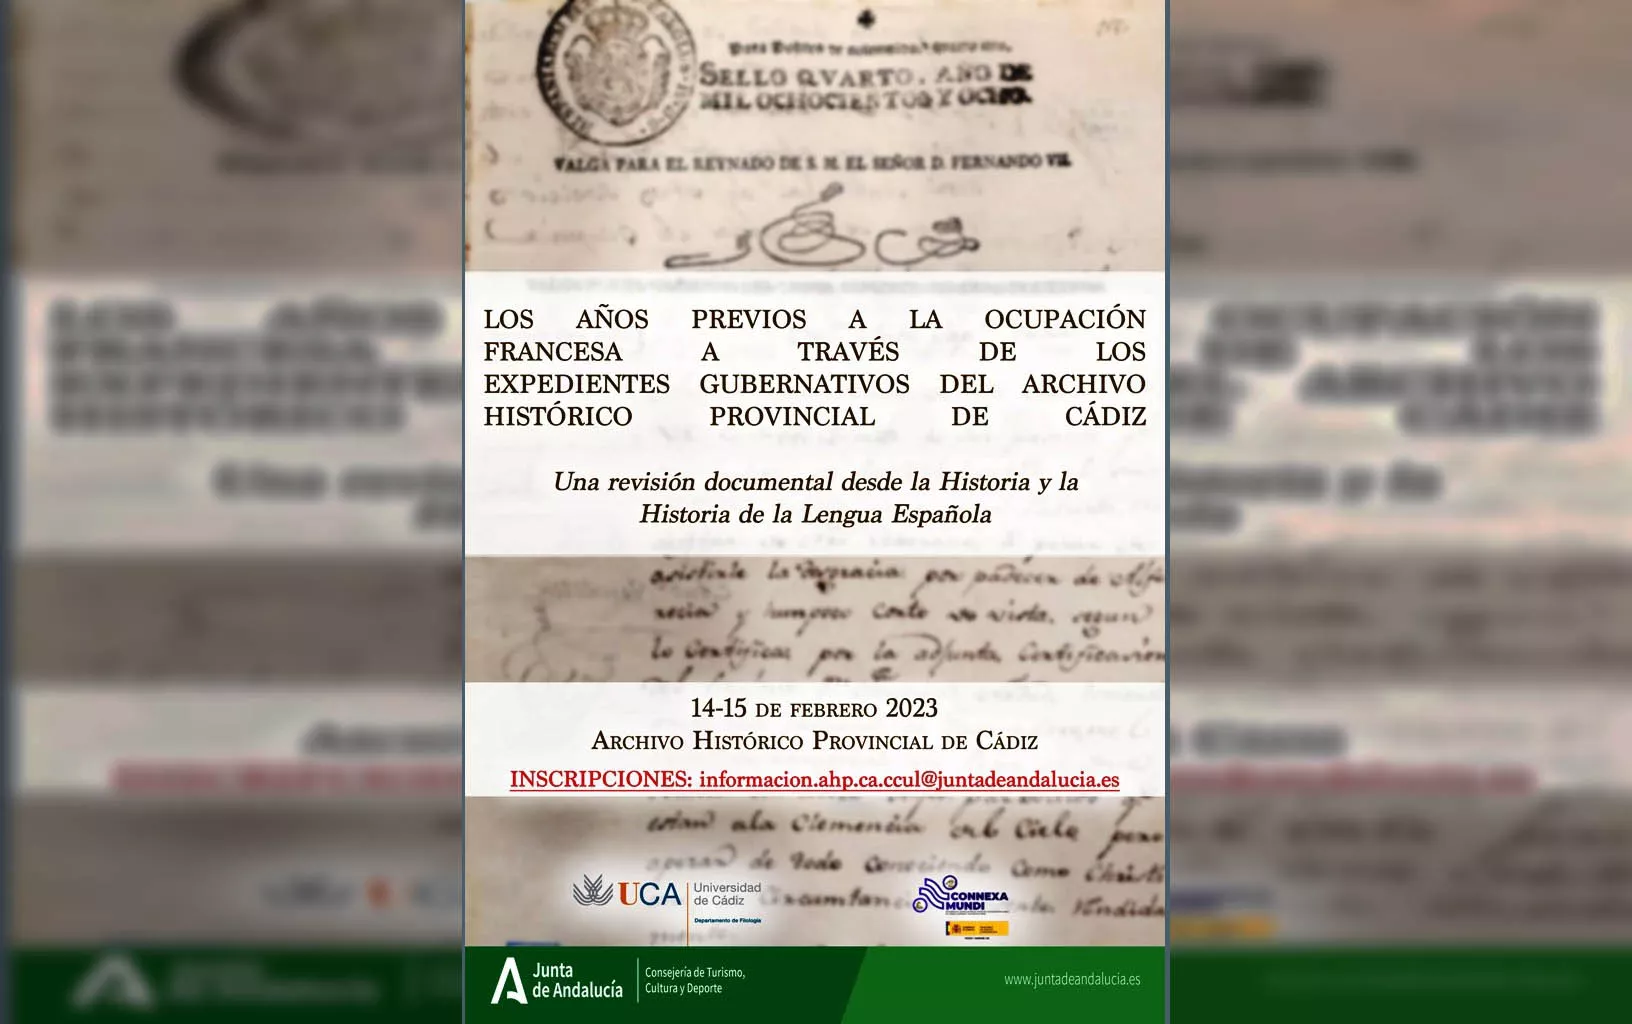 Cartel anunciador del seminario “Los años previos a la ocupación francesa”